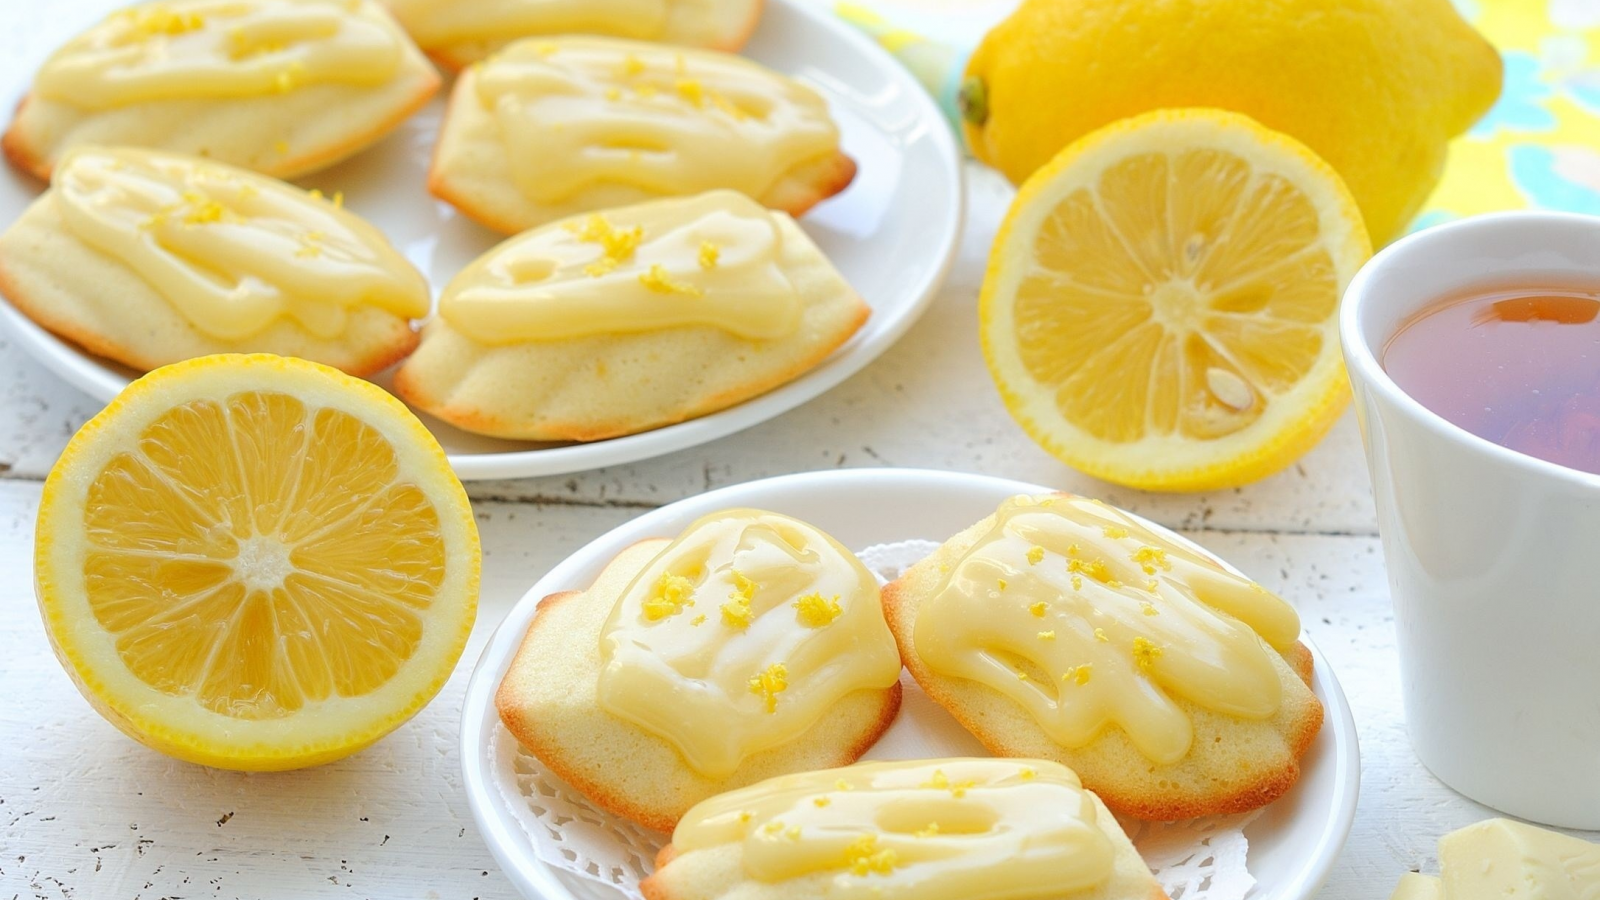 печенье, лимон